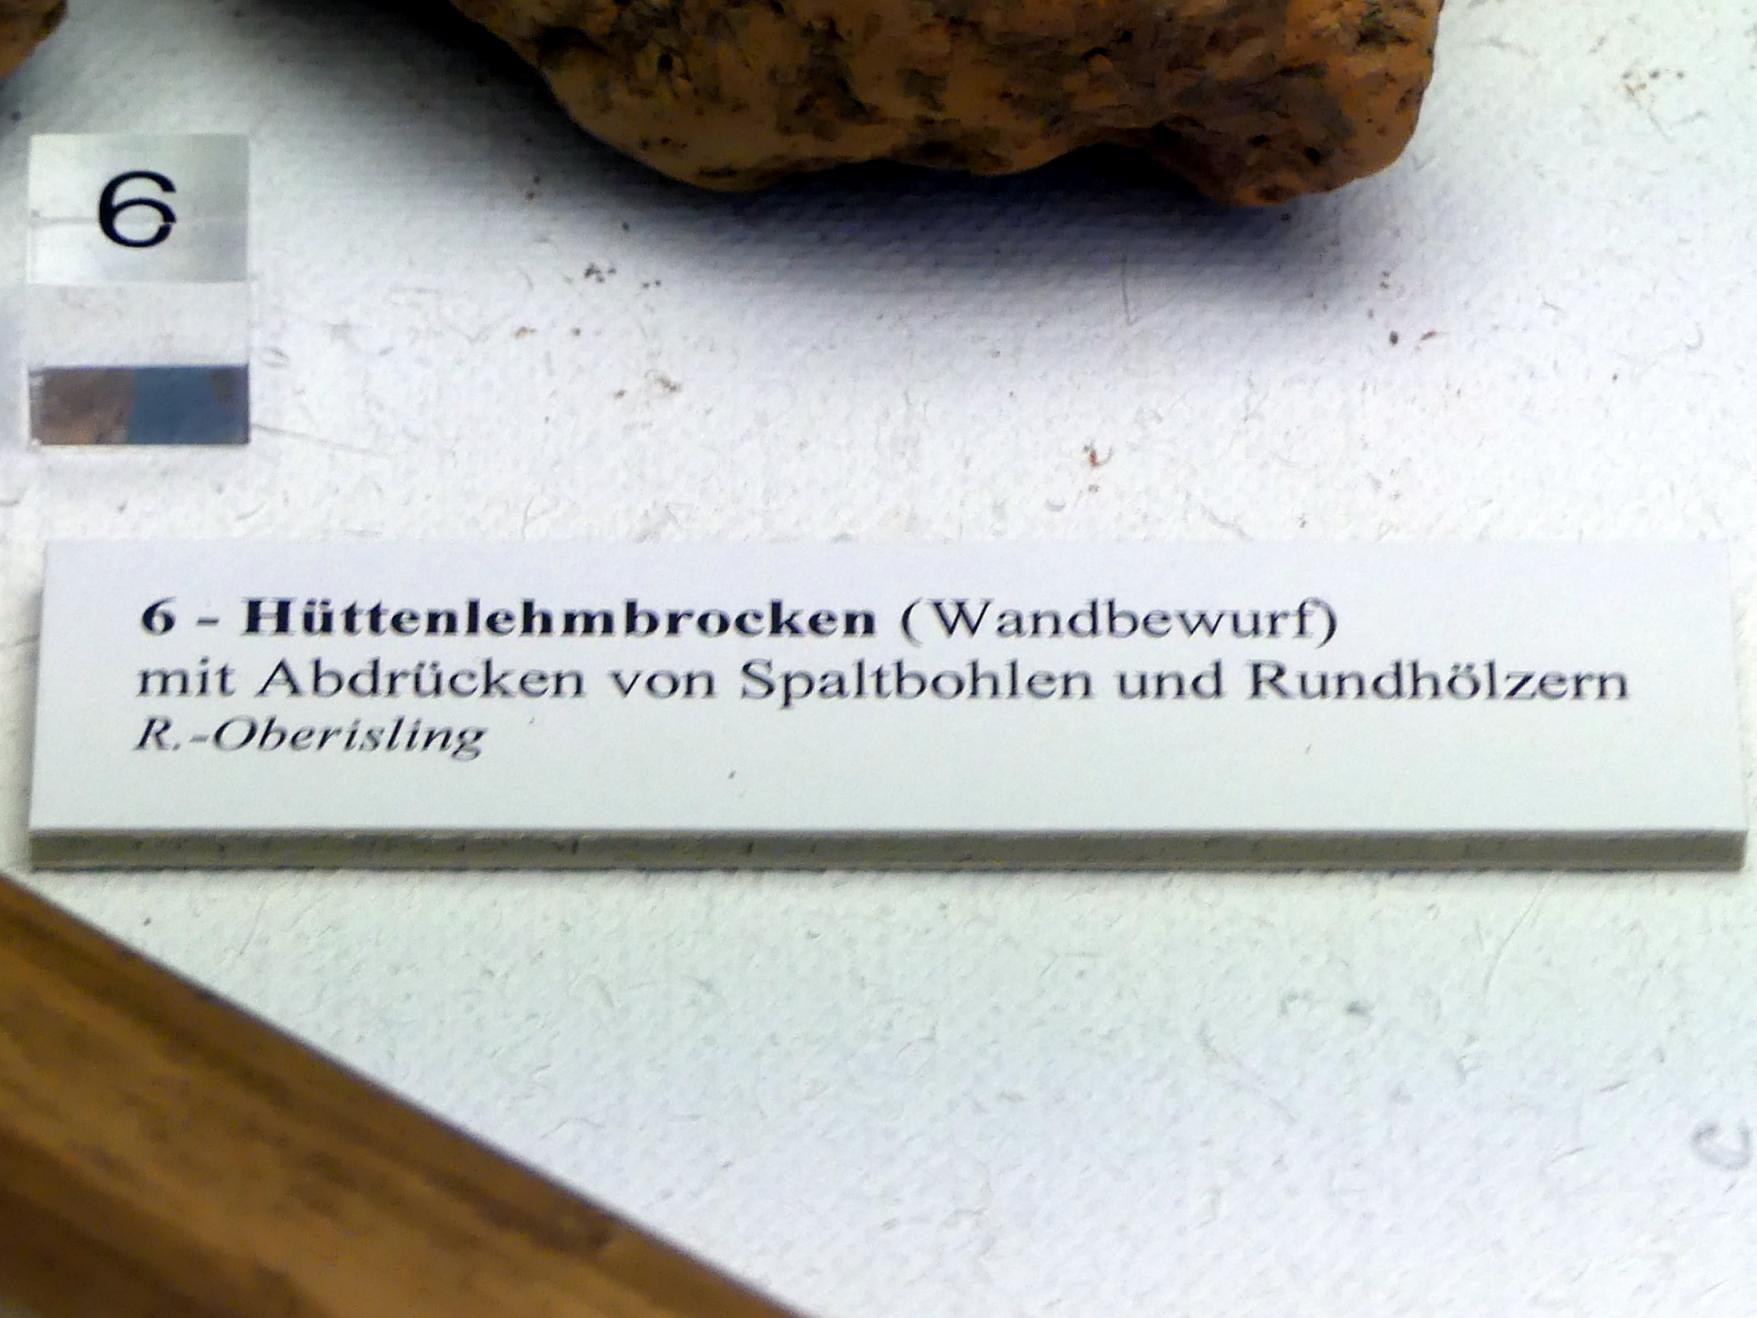 Hüttenlehmbrocken (Wandbewurf), Frühneolithikum (Altneolithikum), 5500 - 4900 v. Chr., Bild 2/2